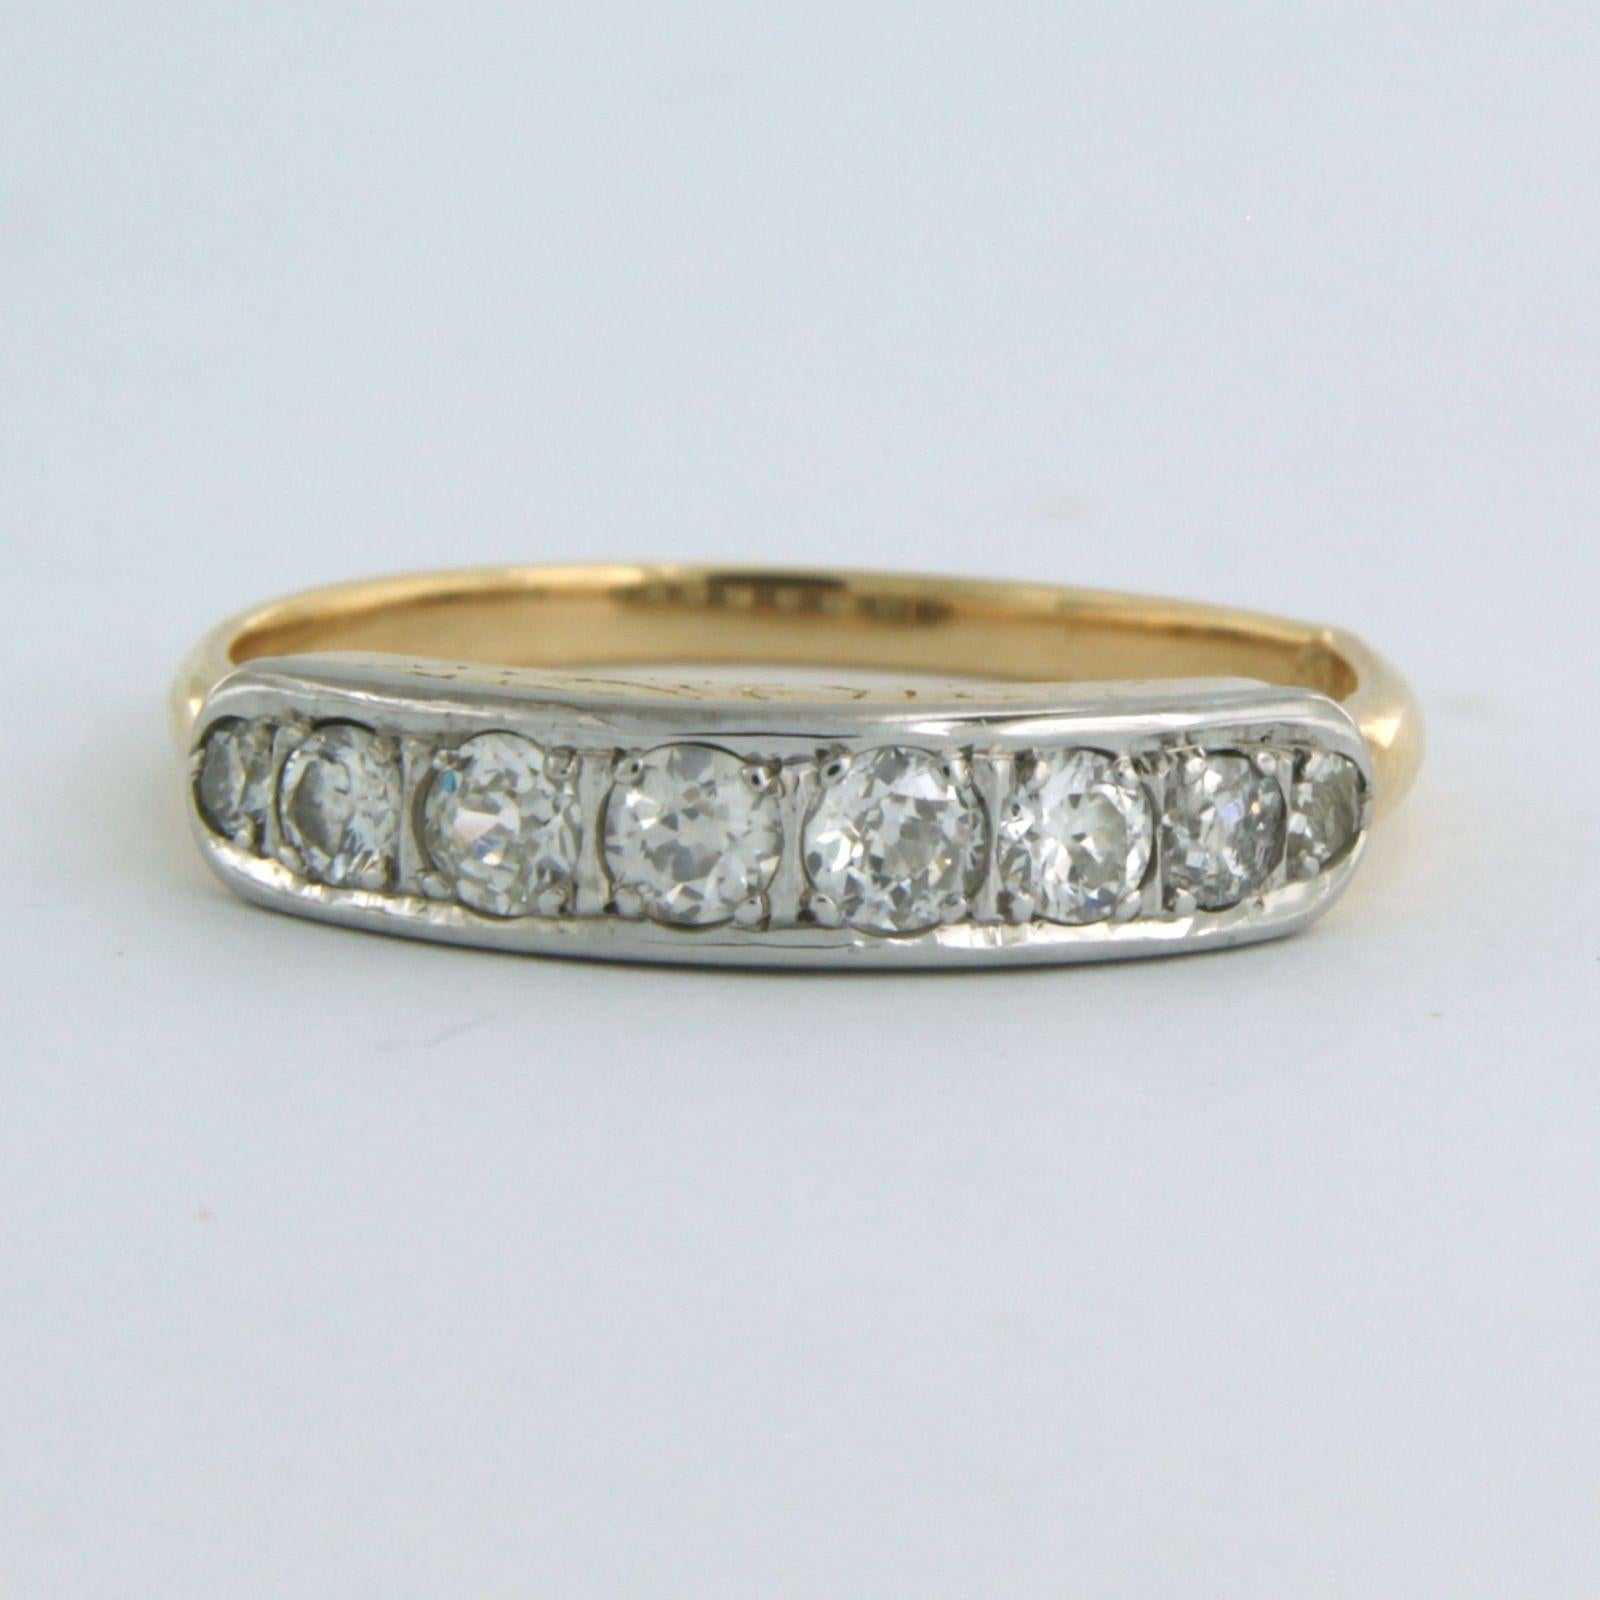 14k zweifarbiger Goldring mit altem europäischem Schliff Diamant bis zu. 0.50ct - F/G - VS/SI - Ringgröße U.S. 8.5 - EU. 18.5 (58)

detaillierte Beschreibung:

die Oberseite des Rings ist 4.0 mm breit

Gewicht 2,9 Gramm

Ringgröße US 8.5 - EU. 18.5